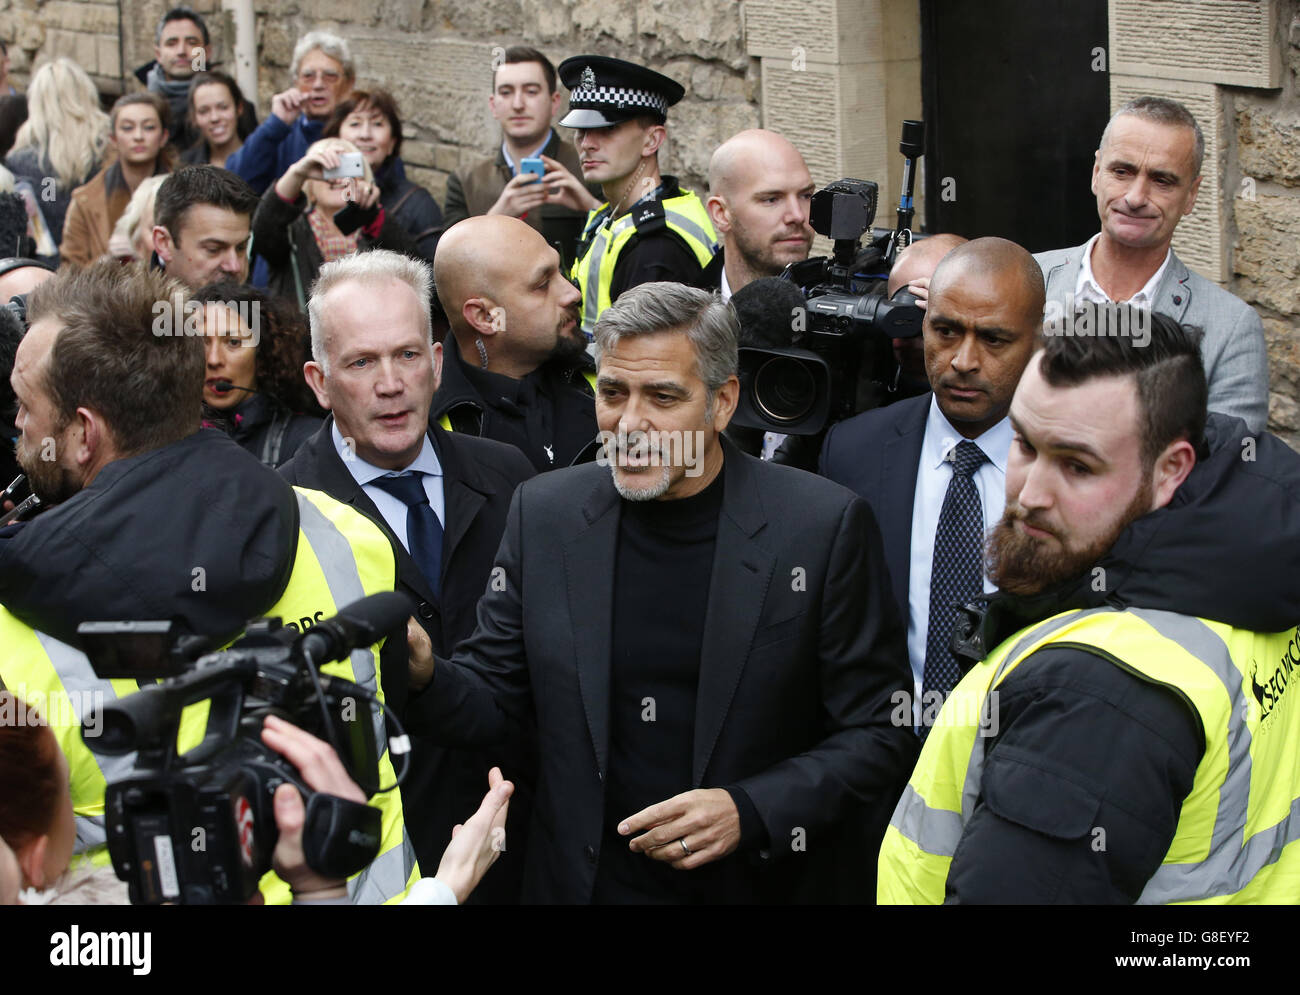 George Clooney est entouré de médias et de fans lorsqu'il arrive dans un café social Bite à Édimbourg après avoir accepté une invitation à rencontrer des travailleurs à la boutique de sandwiches qui aide les sans-abri. Banque D'Images